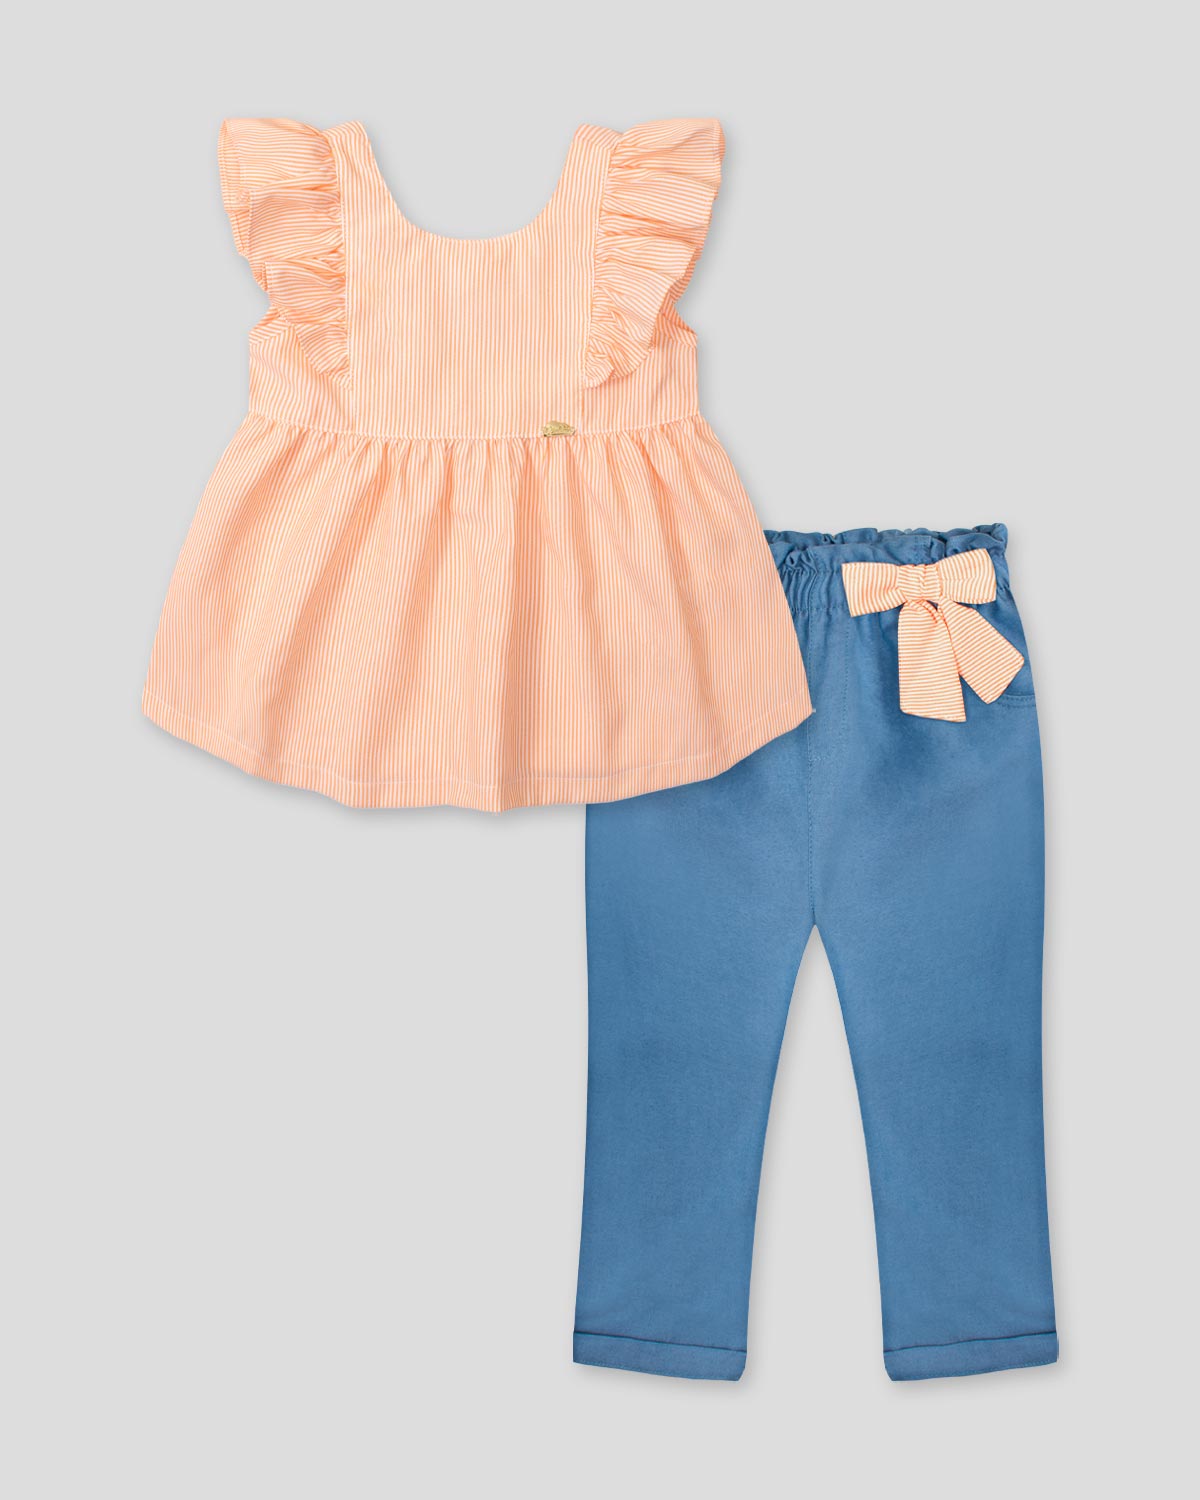 Conjunto blusa de líneas naranjas con bolero en manga y leggins chambray con detalle de moño para bebé niña